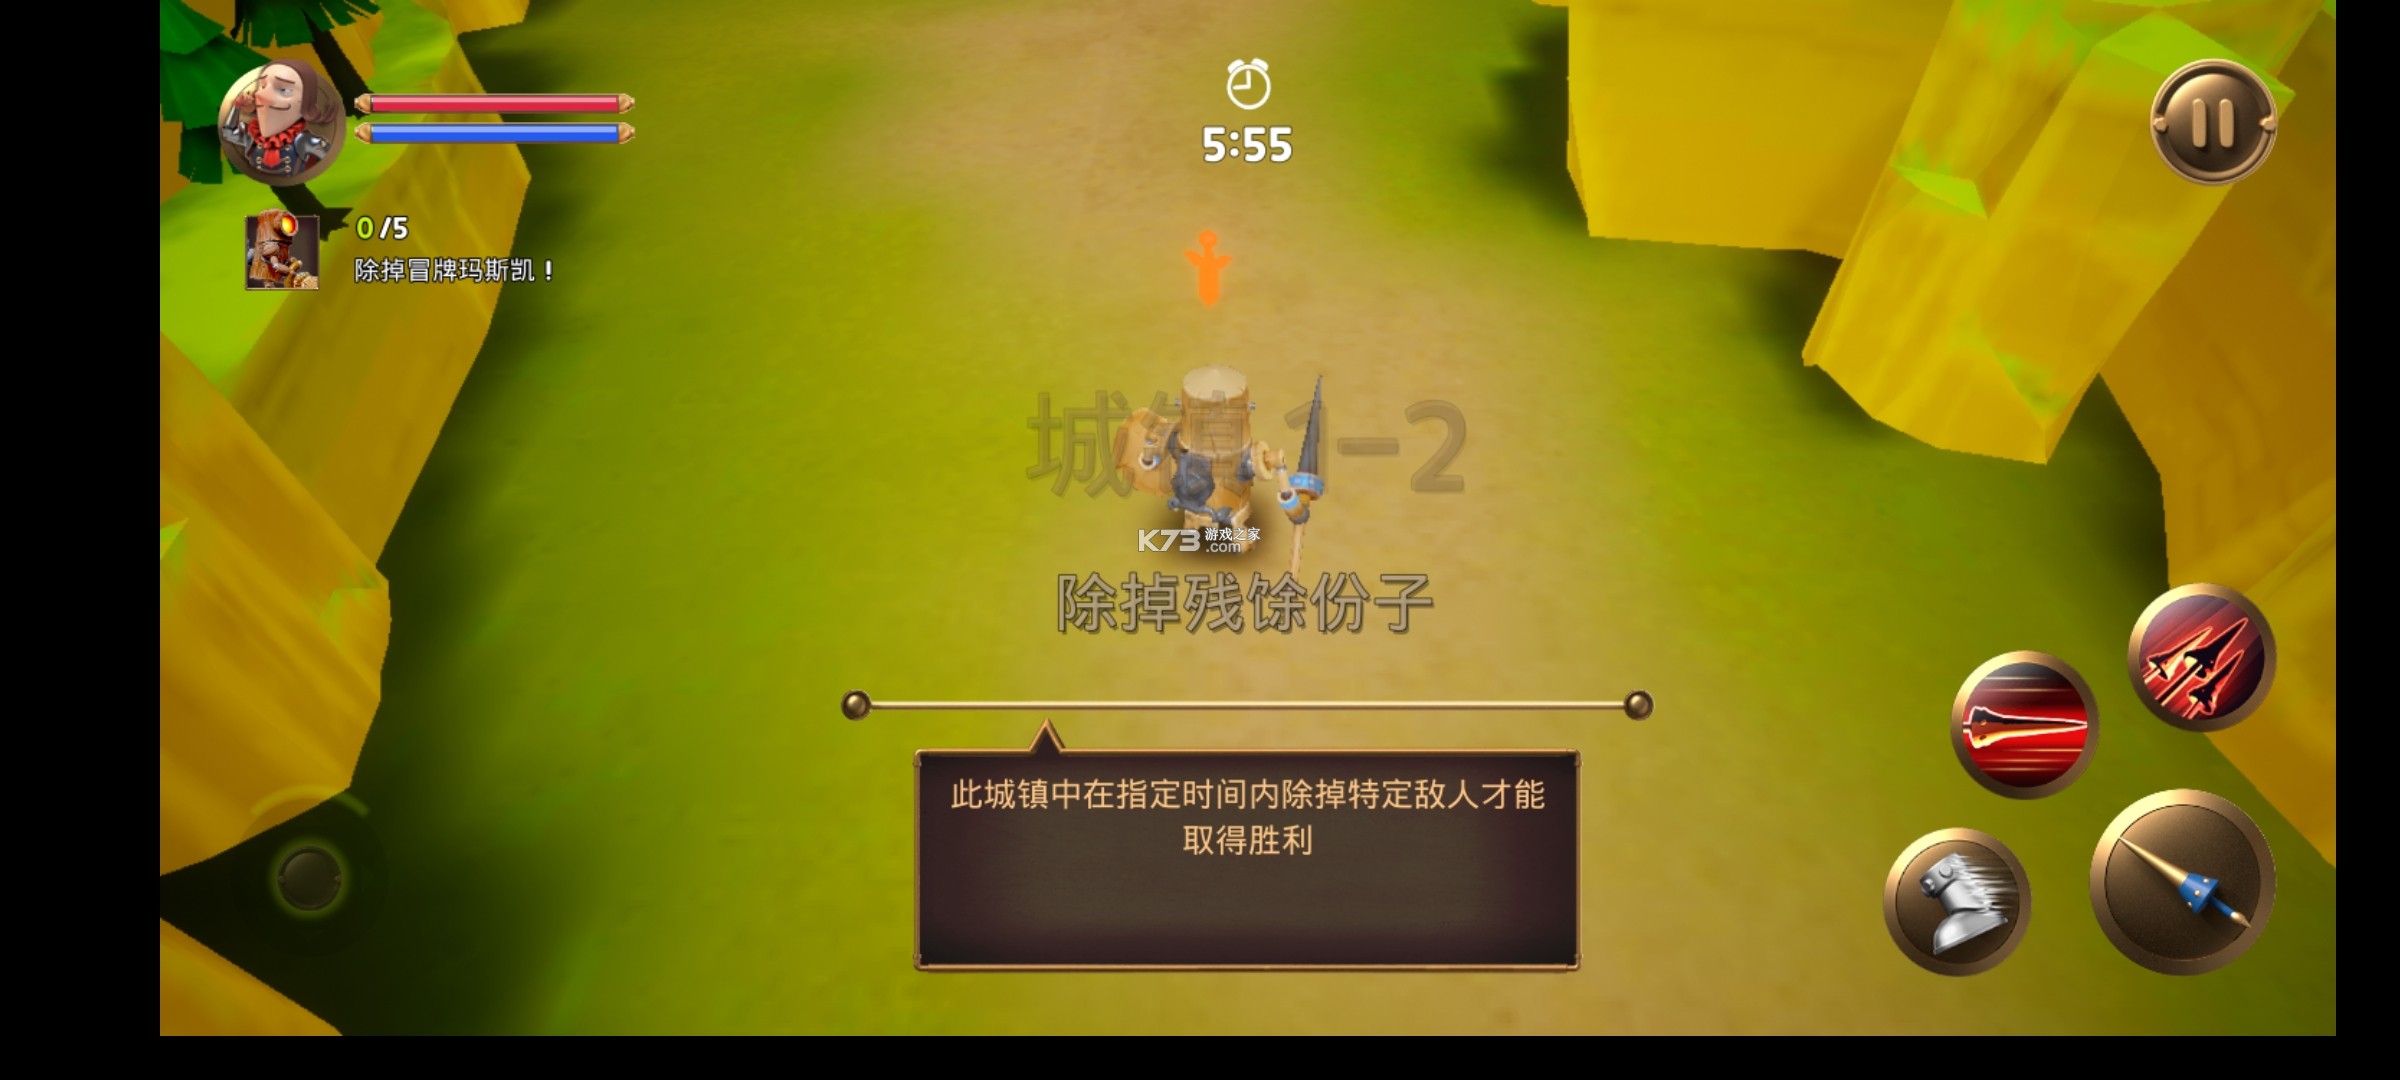 馬季騎士鮮血巴格斯 v1.1.3 中文版 截圖